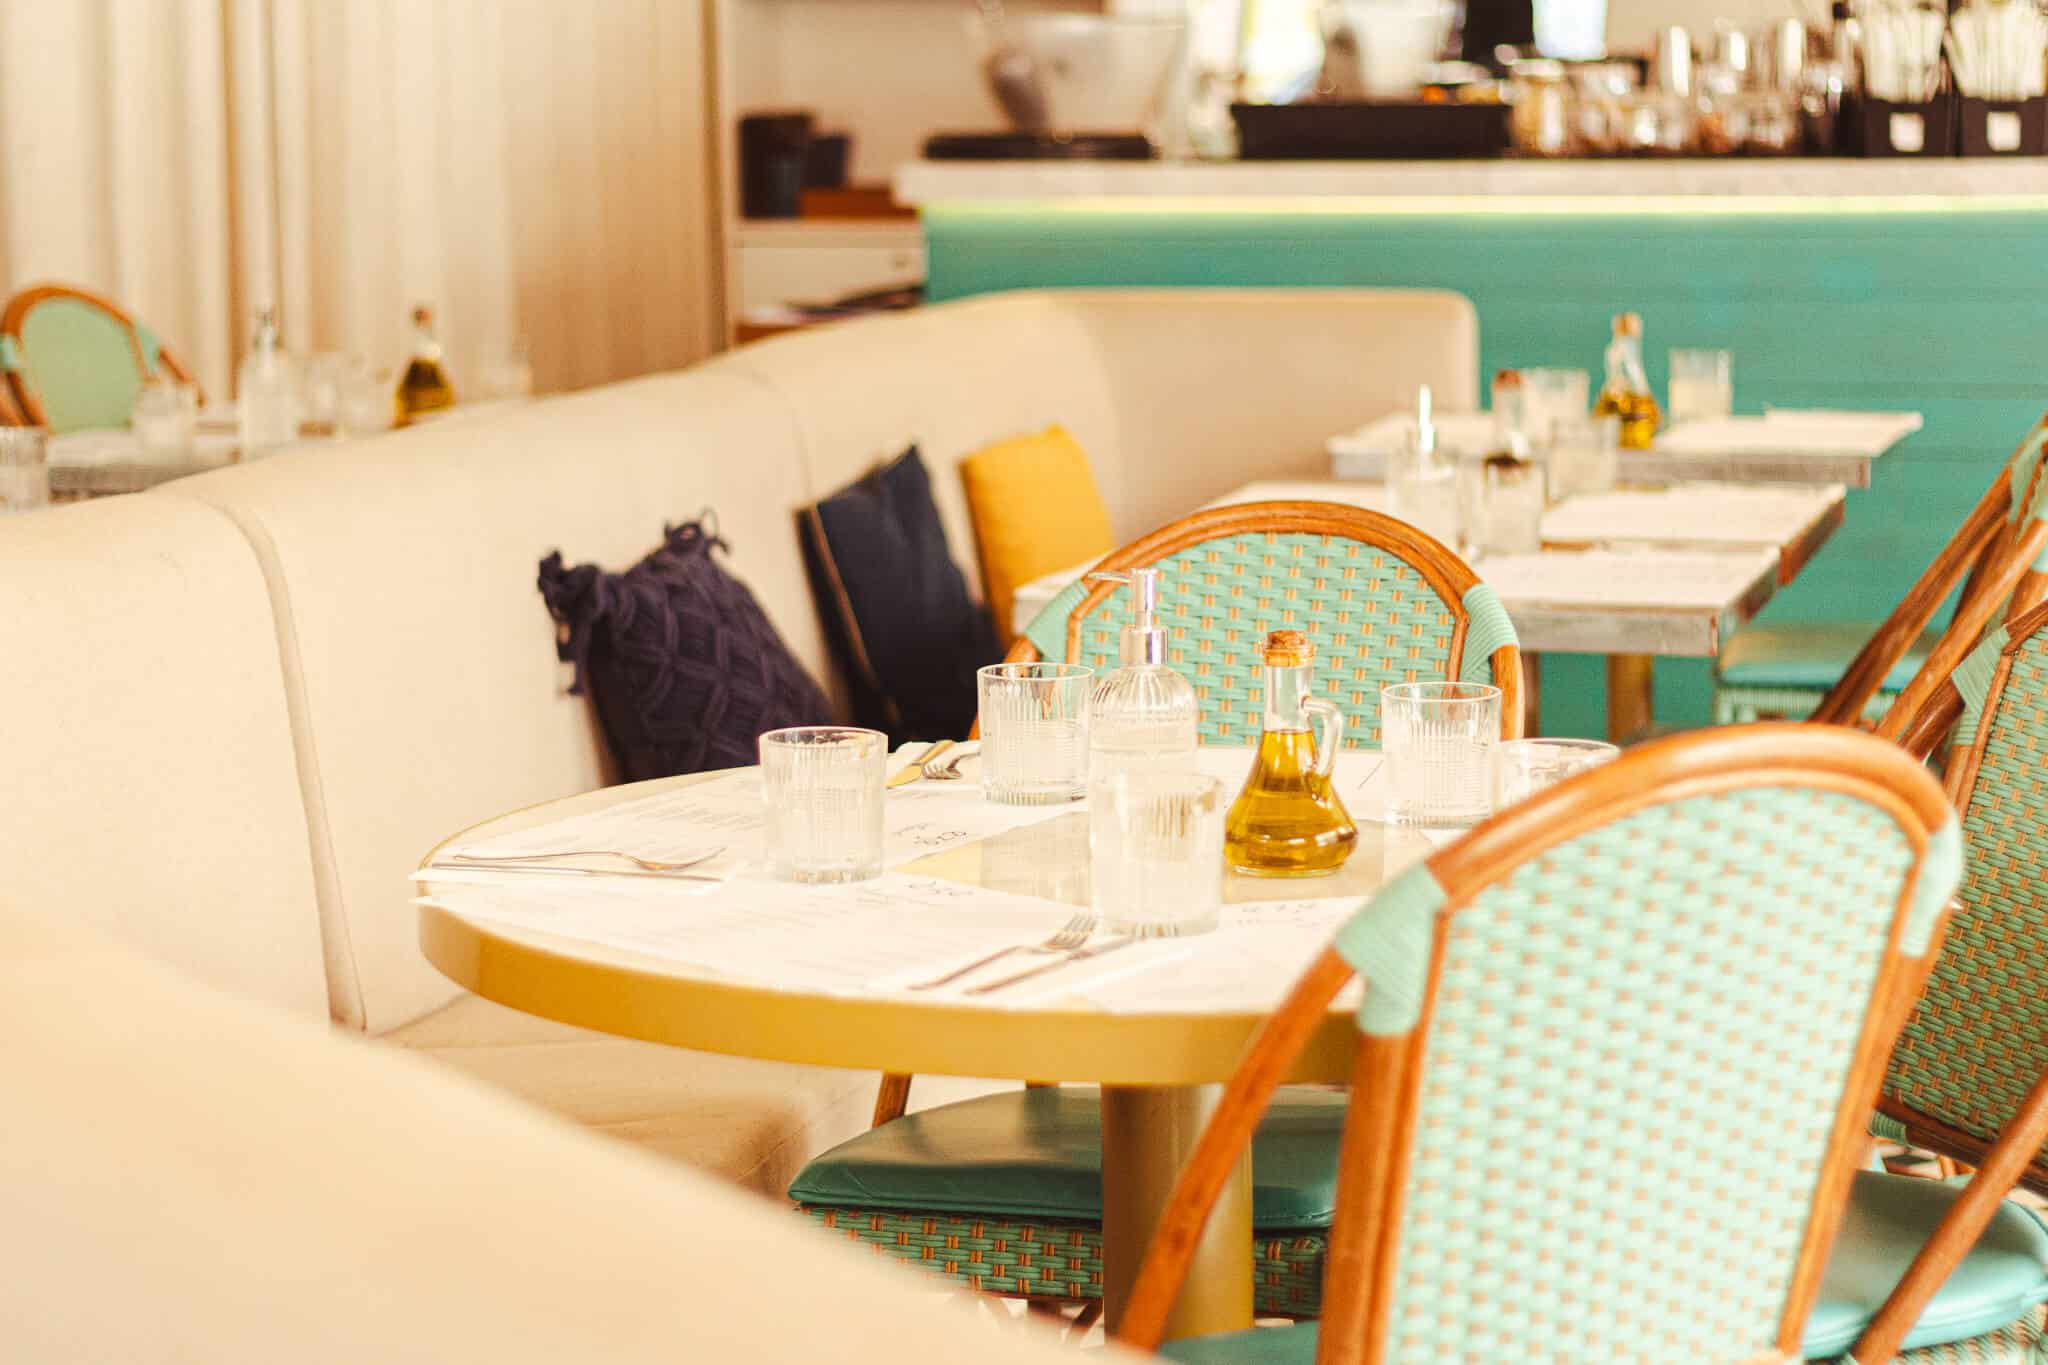 A foto mostra o ambiente interno do restaurante èze, com iluminação natural, sofá na cor clara em harmonizando com mesas redondas e, ao lado, mesas quadradas. A foto mostra duas cadeiras vazadas de forma simétrica simulando uma esteira de palha na cor azul, com bordas de madeira na cor clara. No sofá há 2 almofadas azuis e 1 amarela. Na mesa há copos vazios e uma azeiteira.